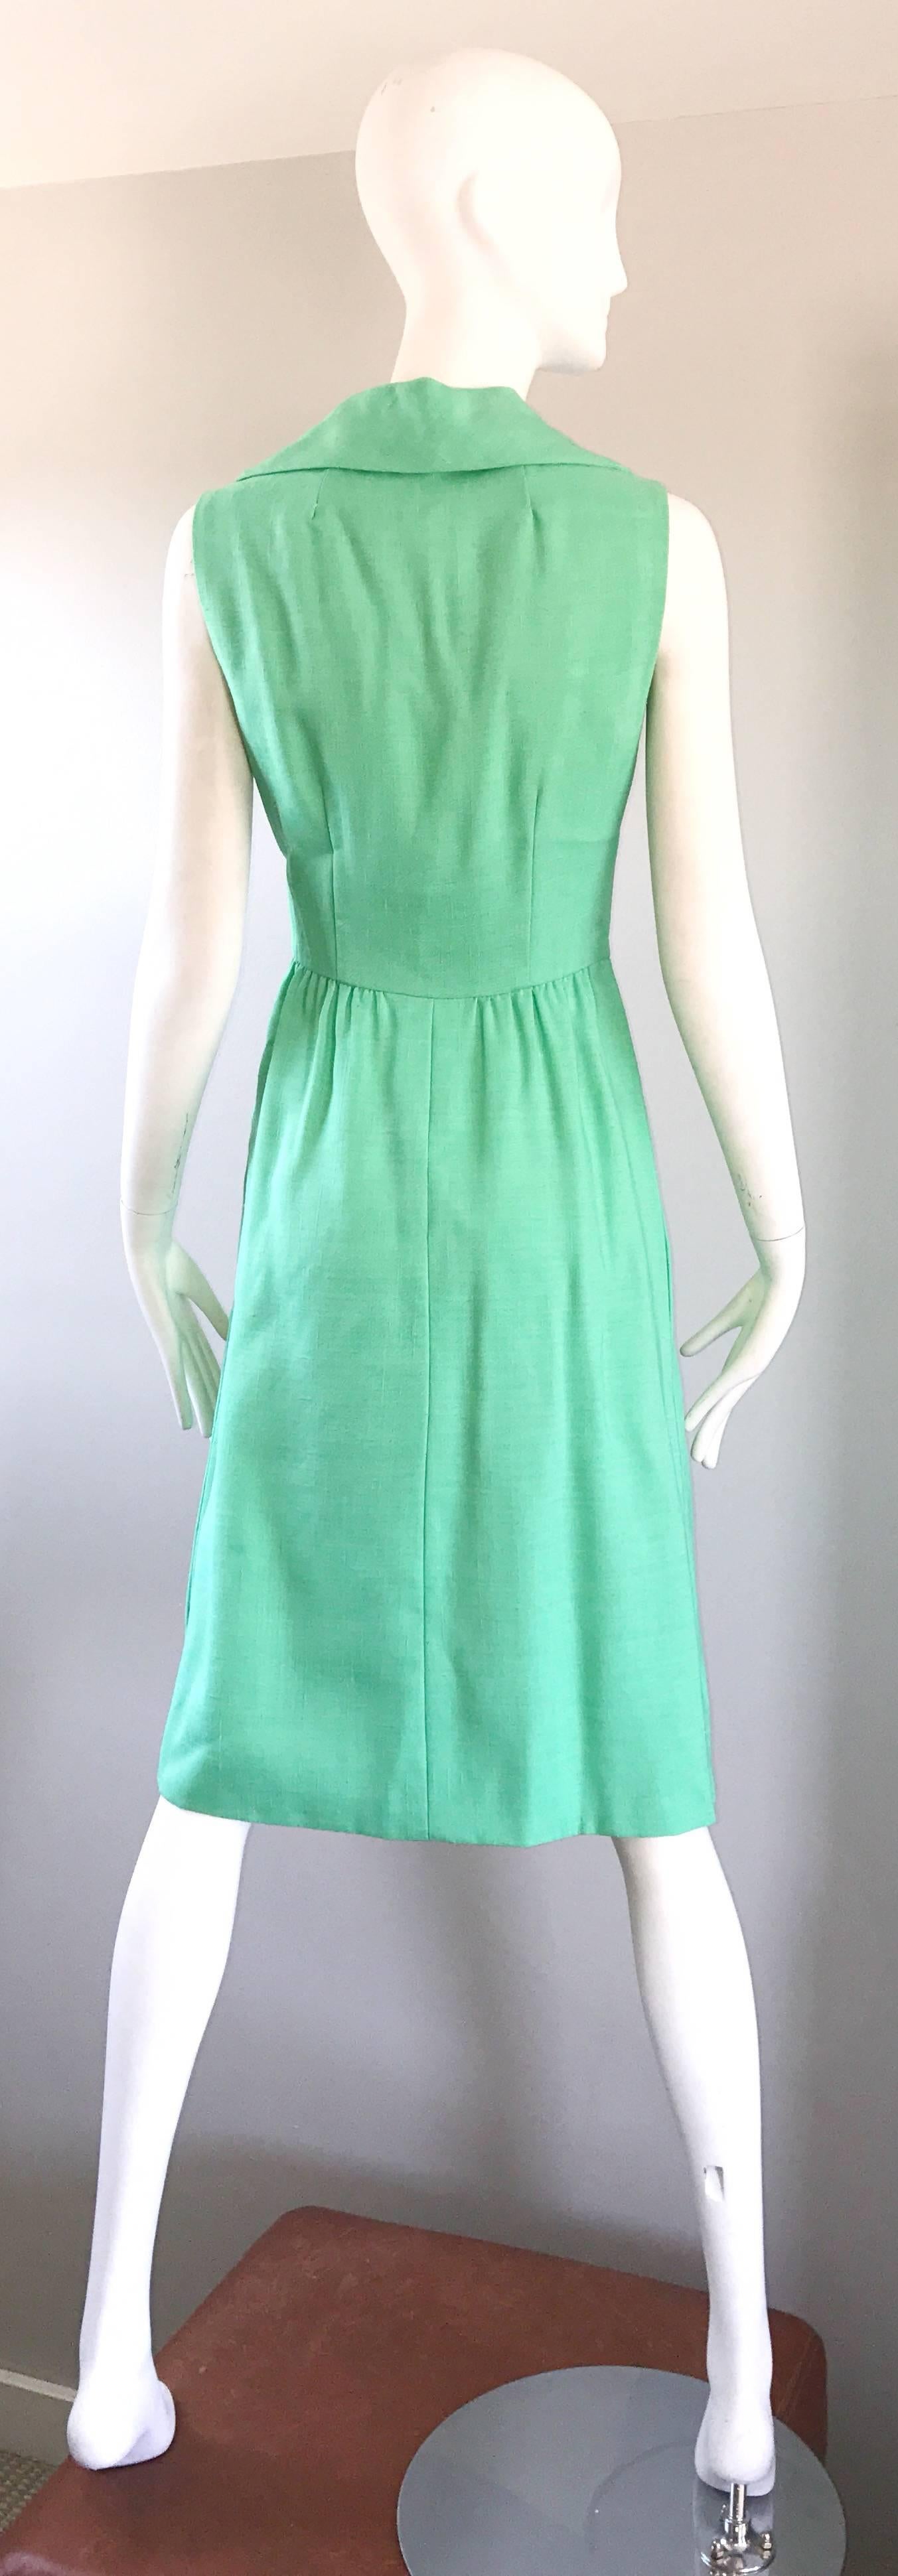 Women's 1950s Mollie Parnis Sorbet Light Green Linen Mint Vintage 50s Shirt Dress